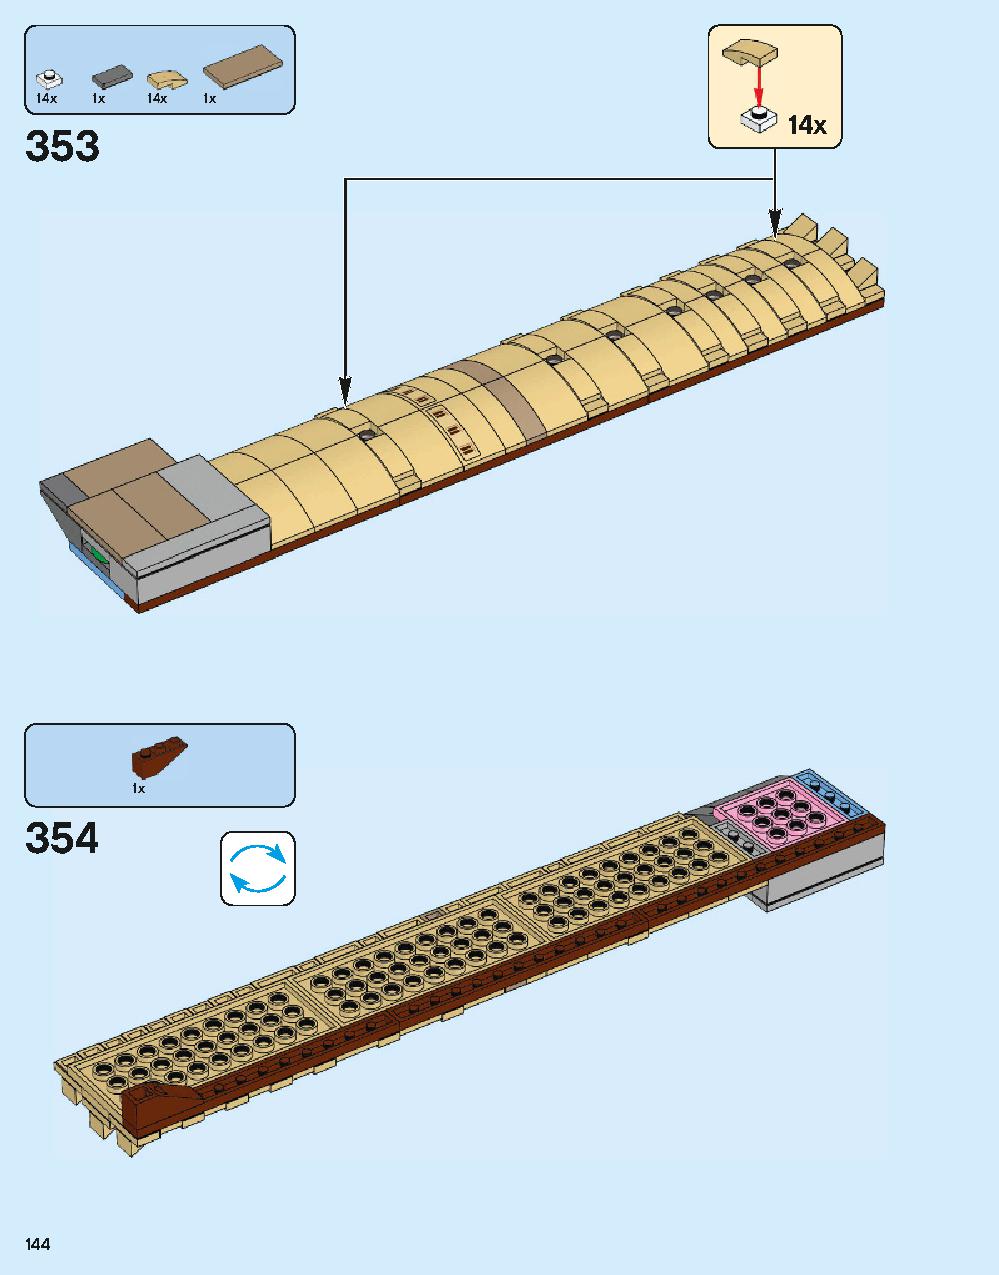 ホグワーツ城 71043 レゴの商品情報 レゴの説明書・組立方法 144 page